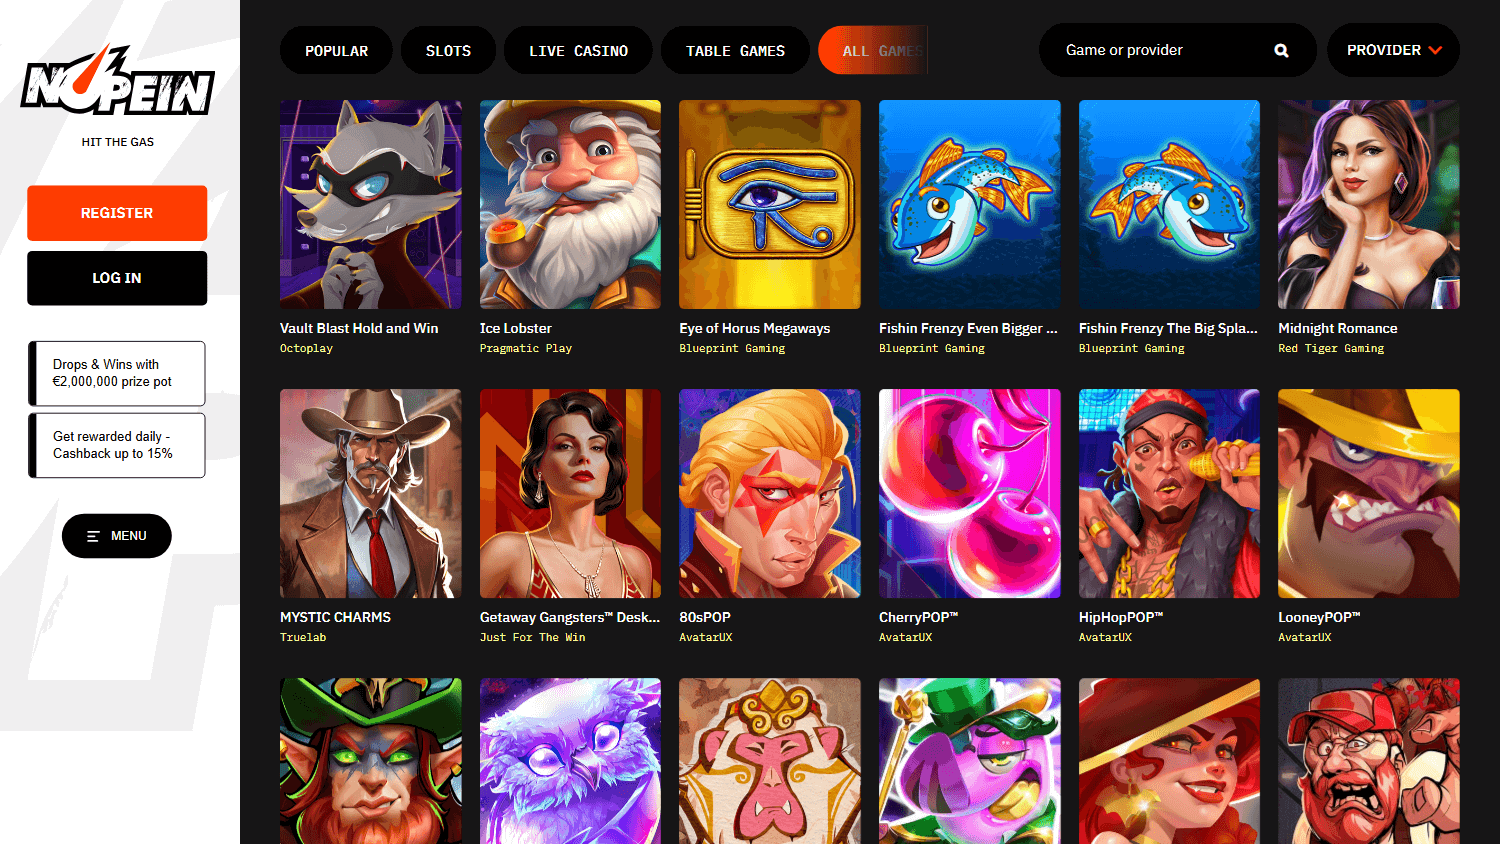 nopein_casino_game_gallery_desktop